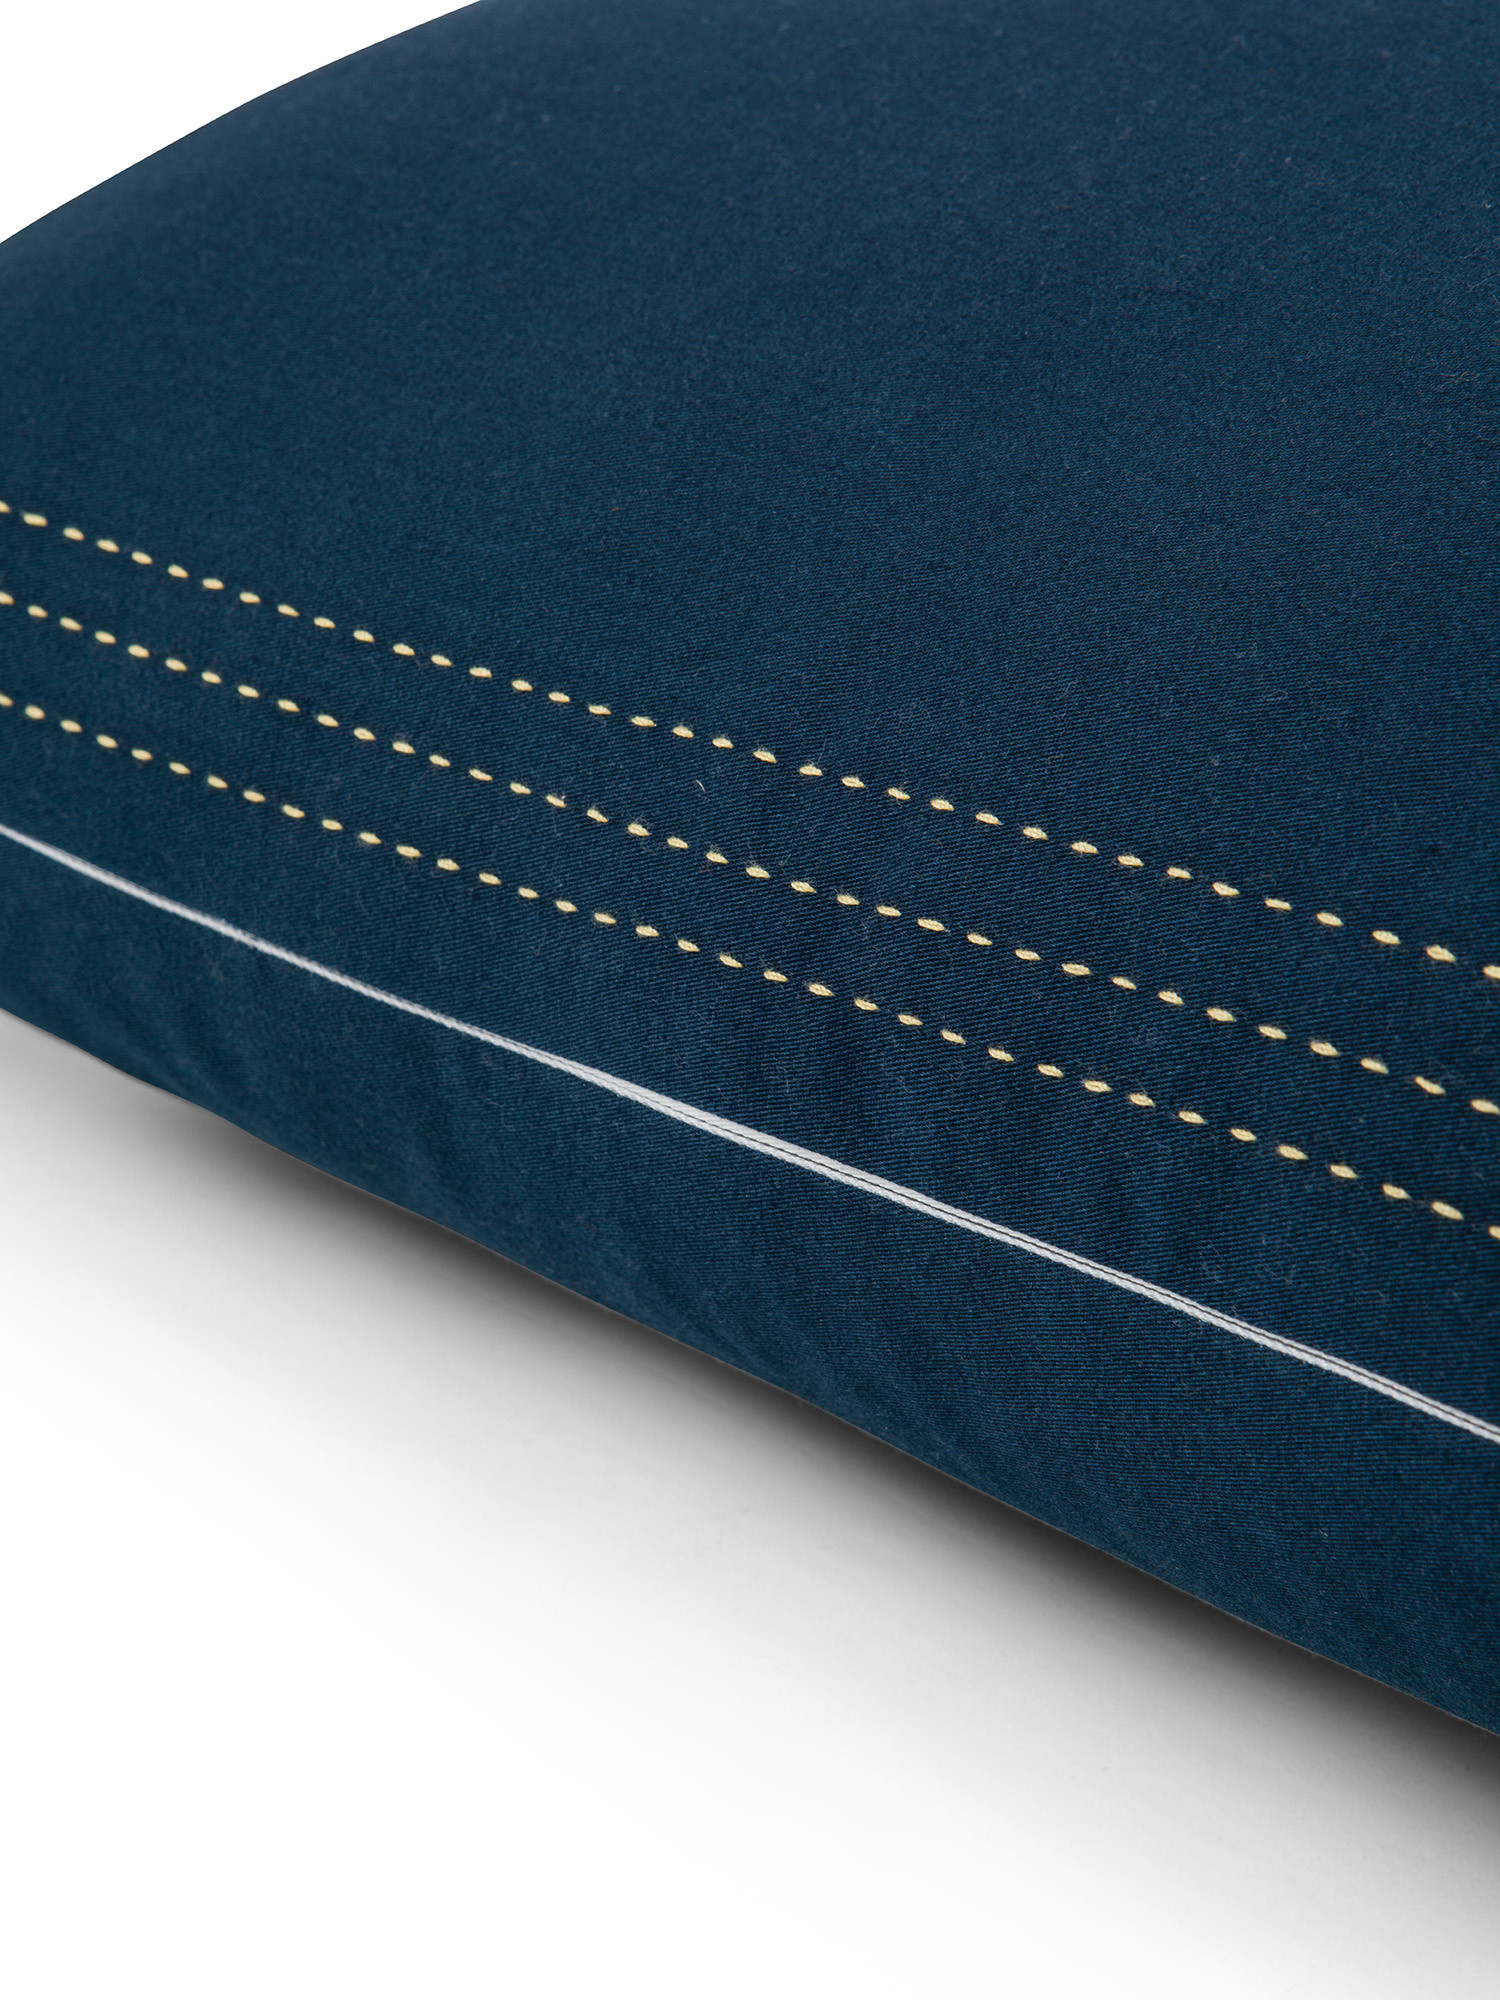 Cuscino twill di cotone con impunture 45x45cm, Blu scuro, large image number 2